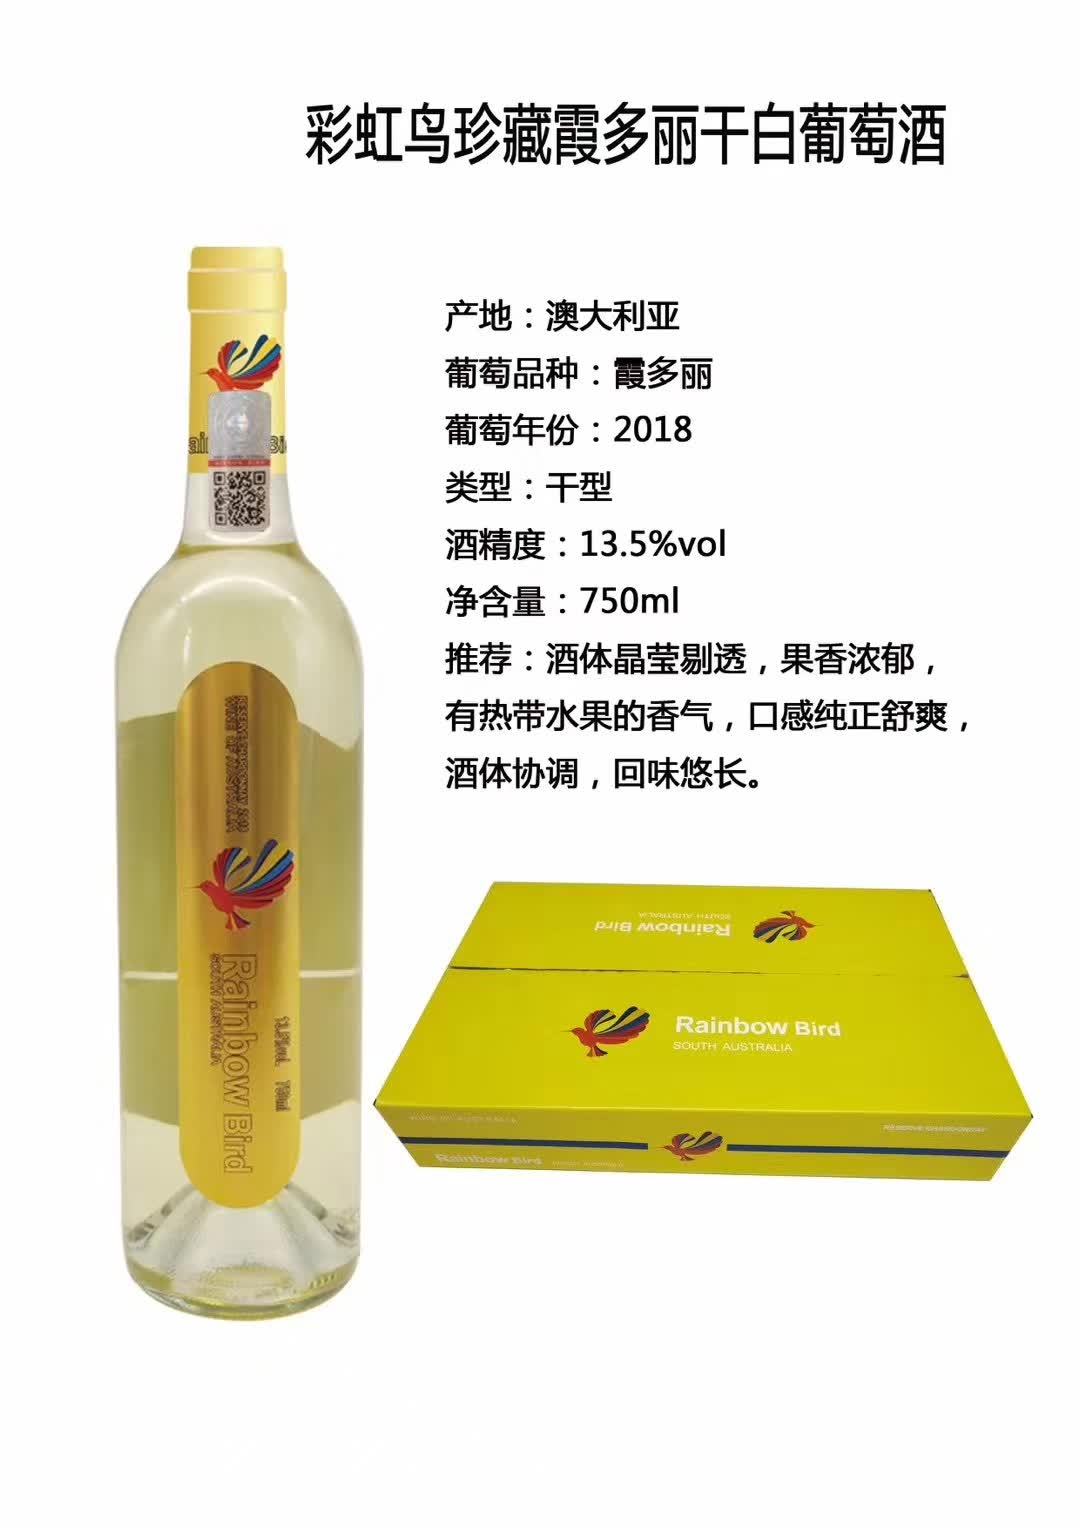 上海万耀澳大利亚原装进口彩虹鸟珍藏干白白酒葡萄酒酒庄